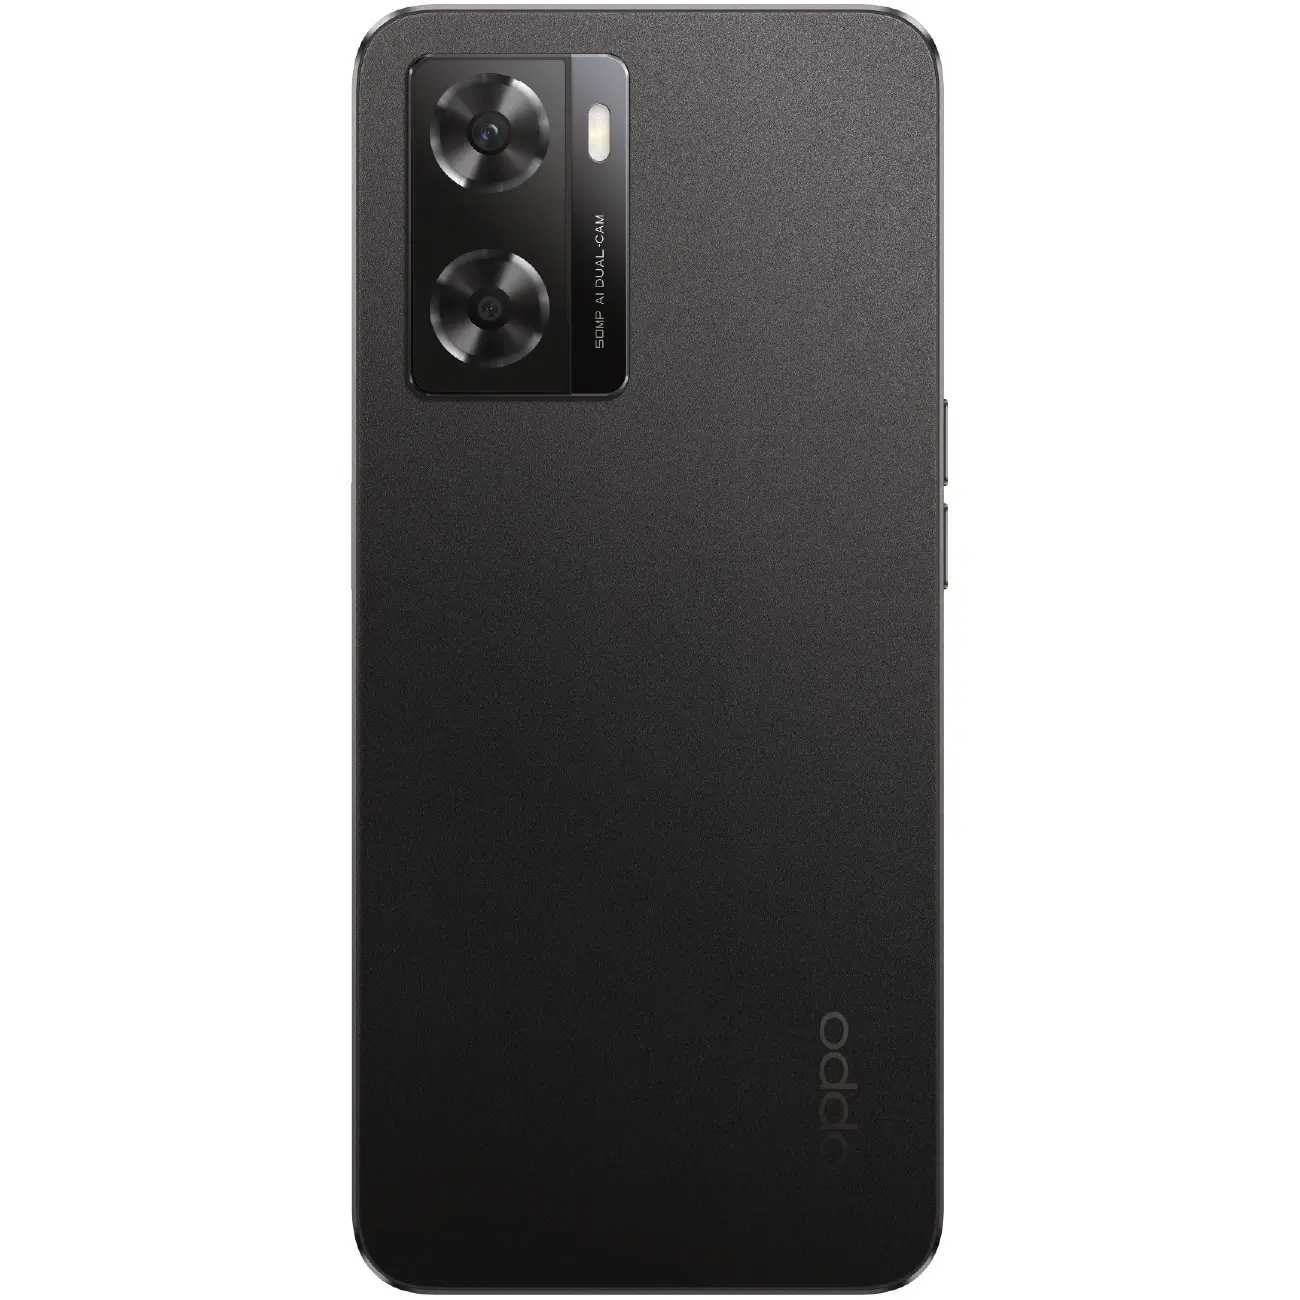 Xalol Muddatli to'lovga Telefon Oppo A57s 4/128 GB Black arzon narxda